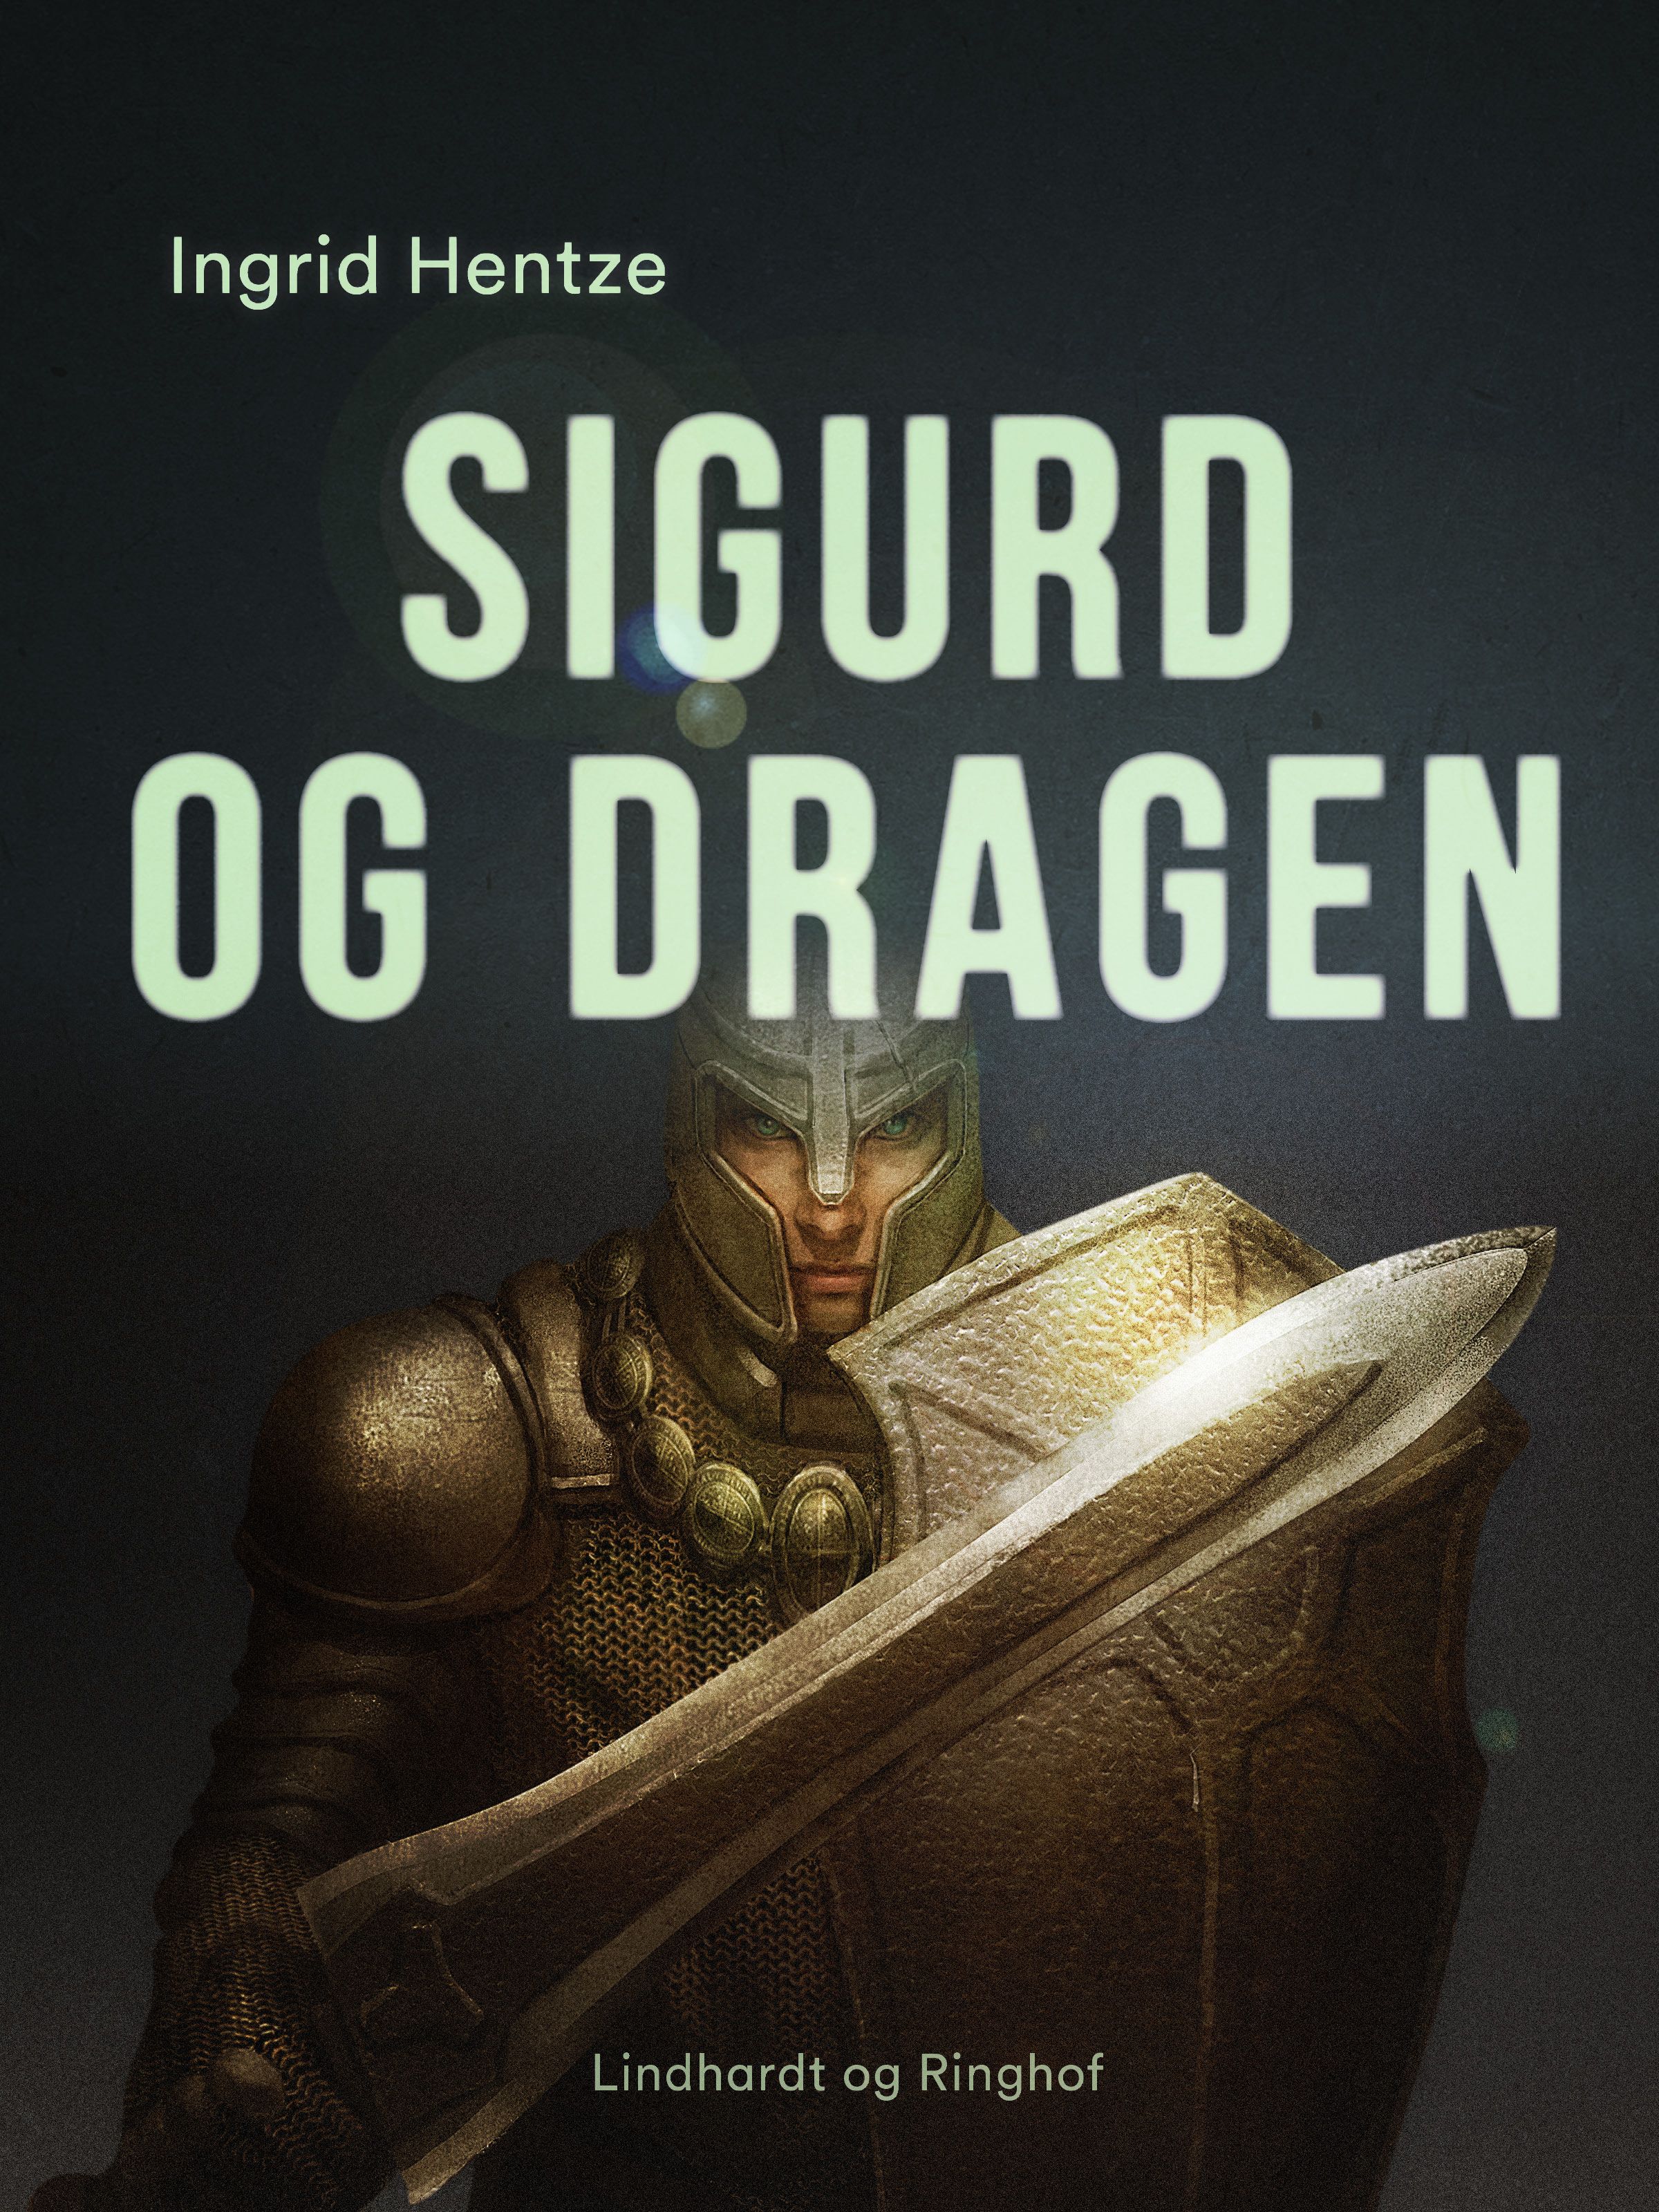 Sigurd og dragen, e-bog af Ingrid Hentze